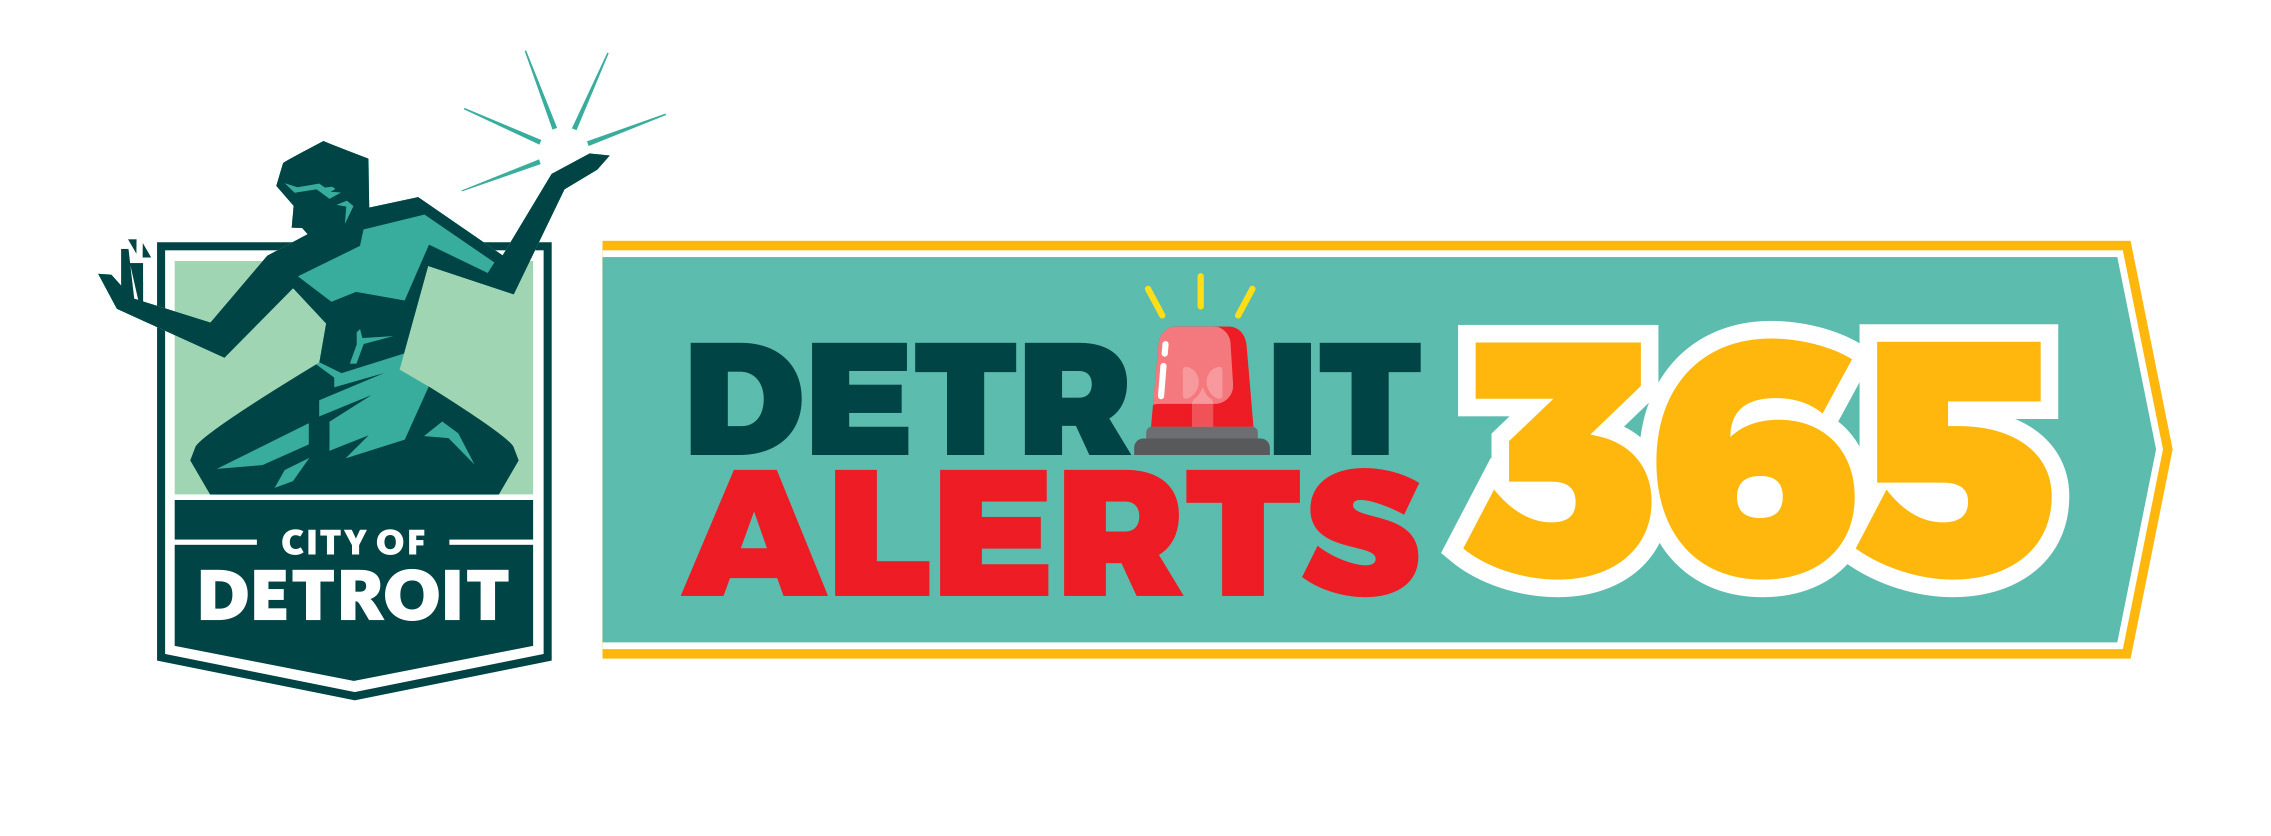 Detroit Alerts 365 Photo